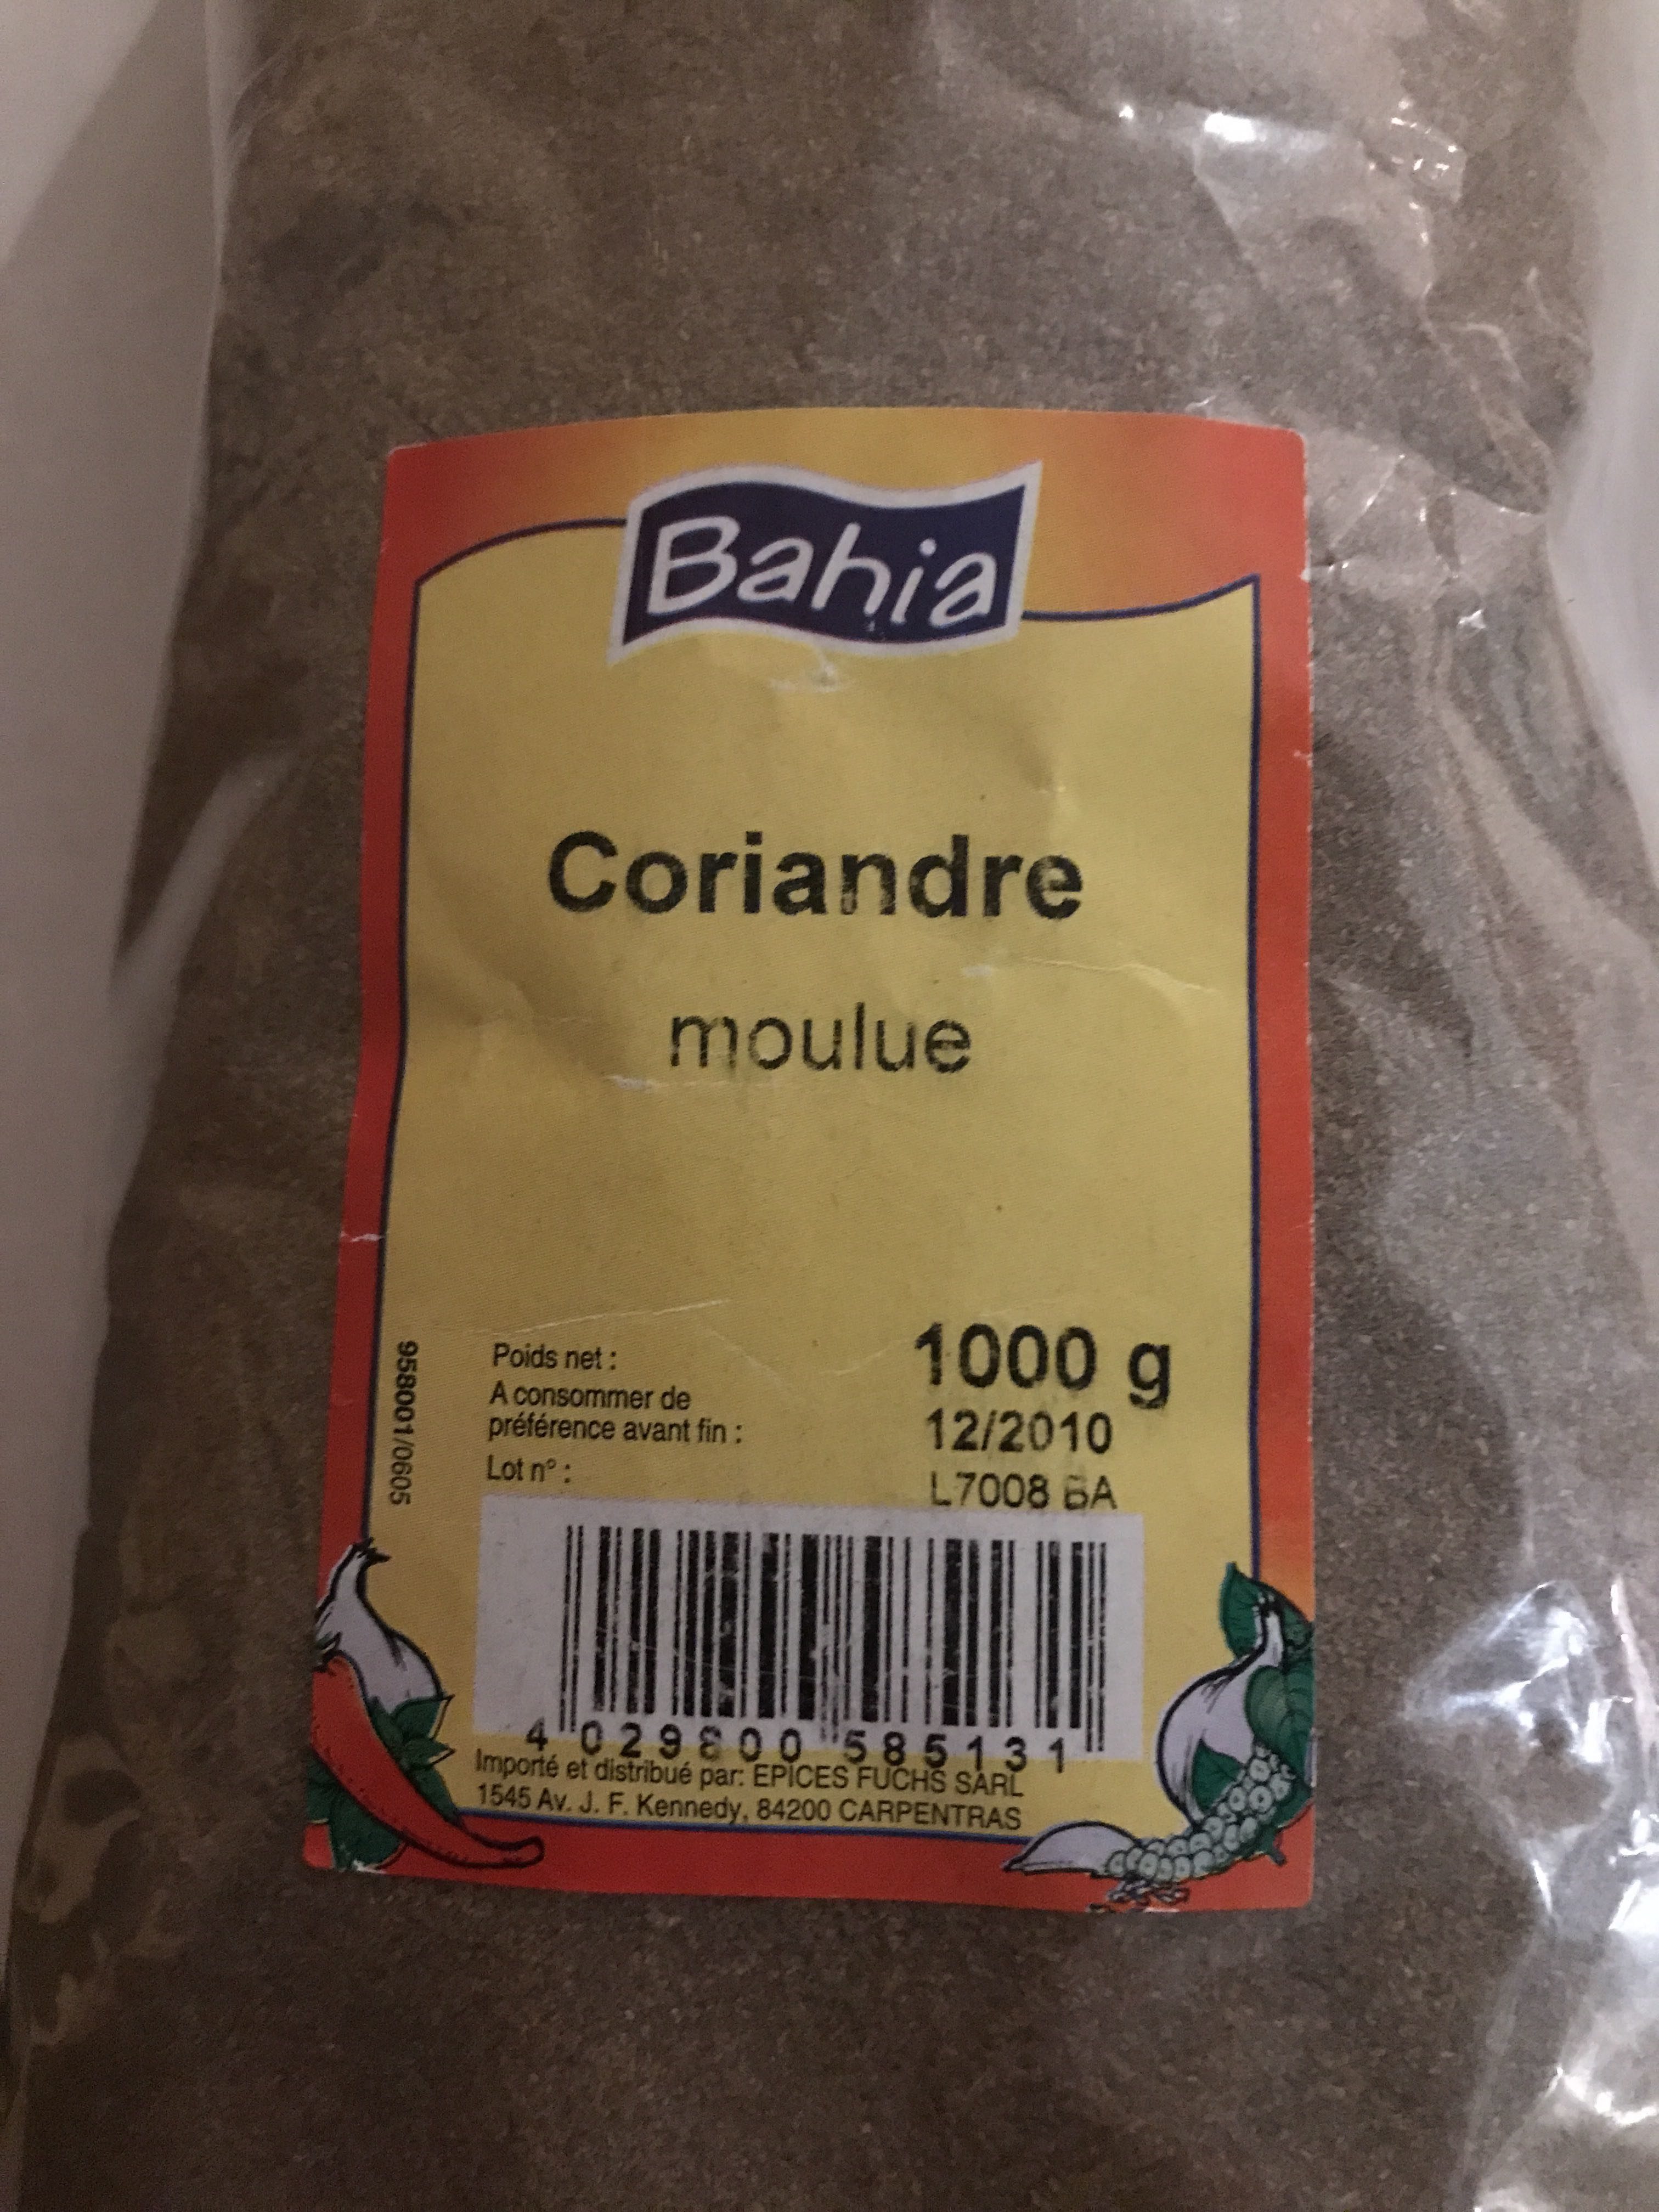 Coriandre moulue - Product - fr